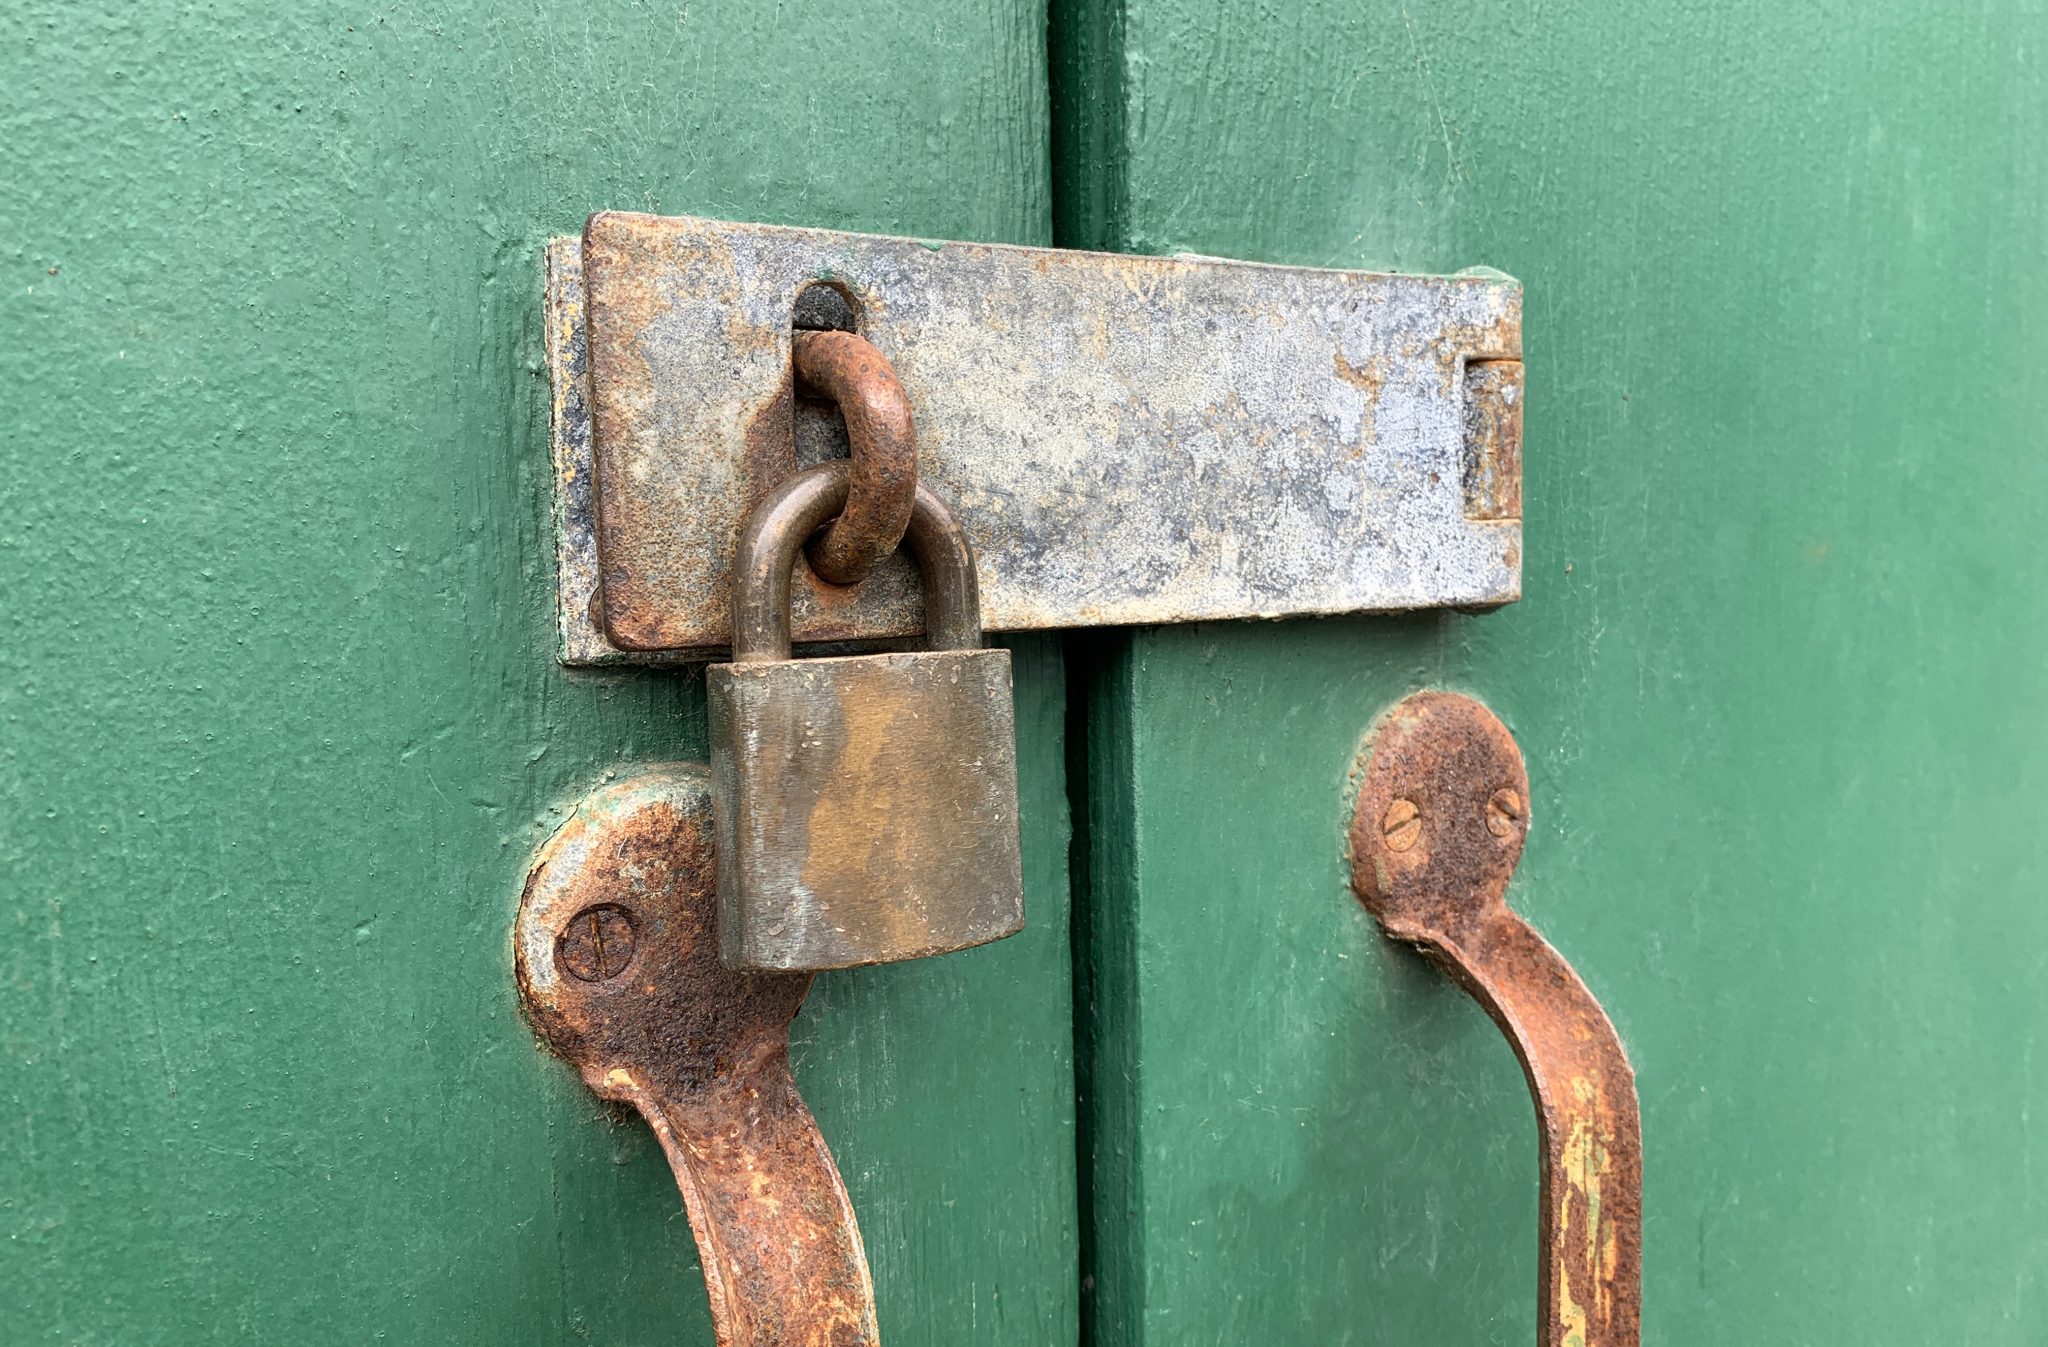 Rusty old metal lock